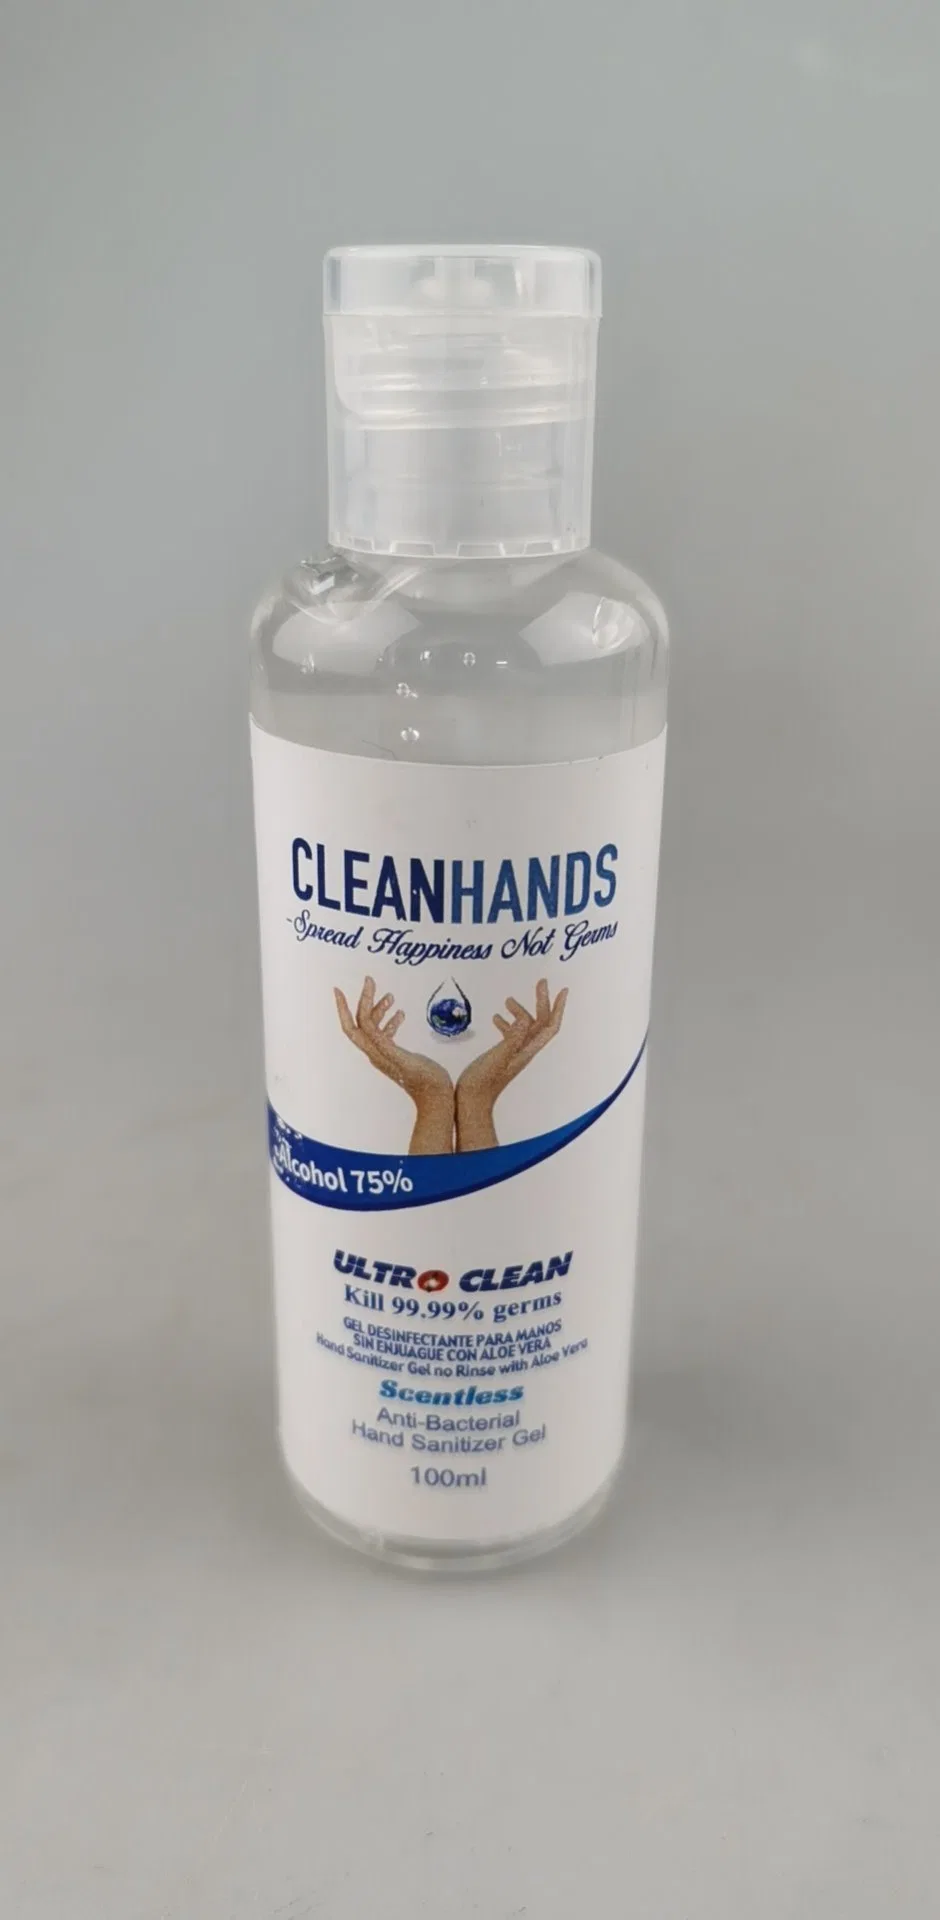 237ml Gel higienizador por mano de un 75% de alcohol con la FDA SDS